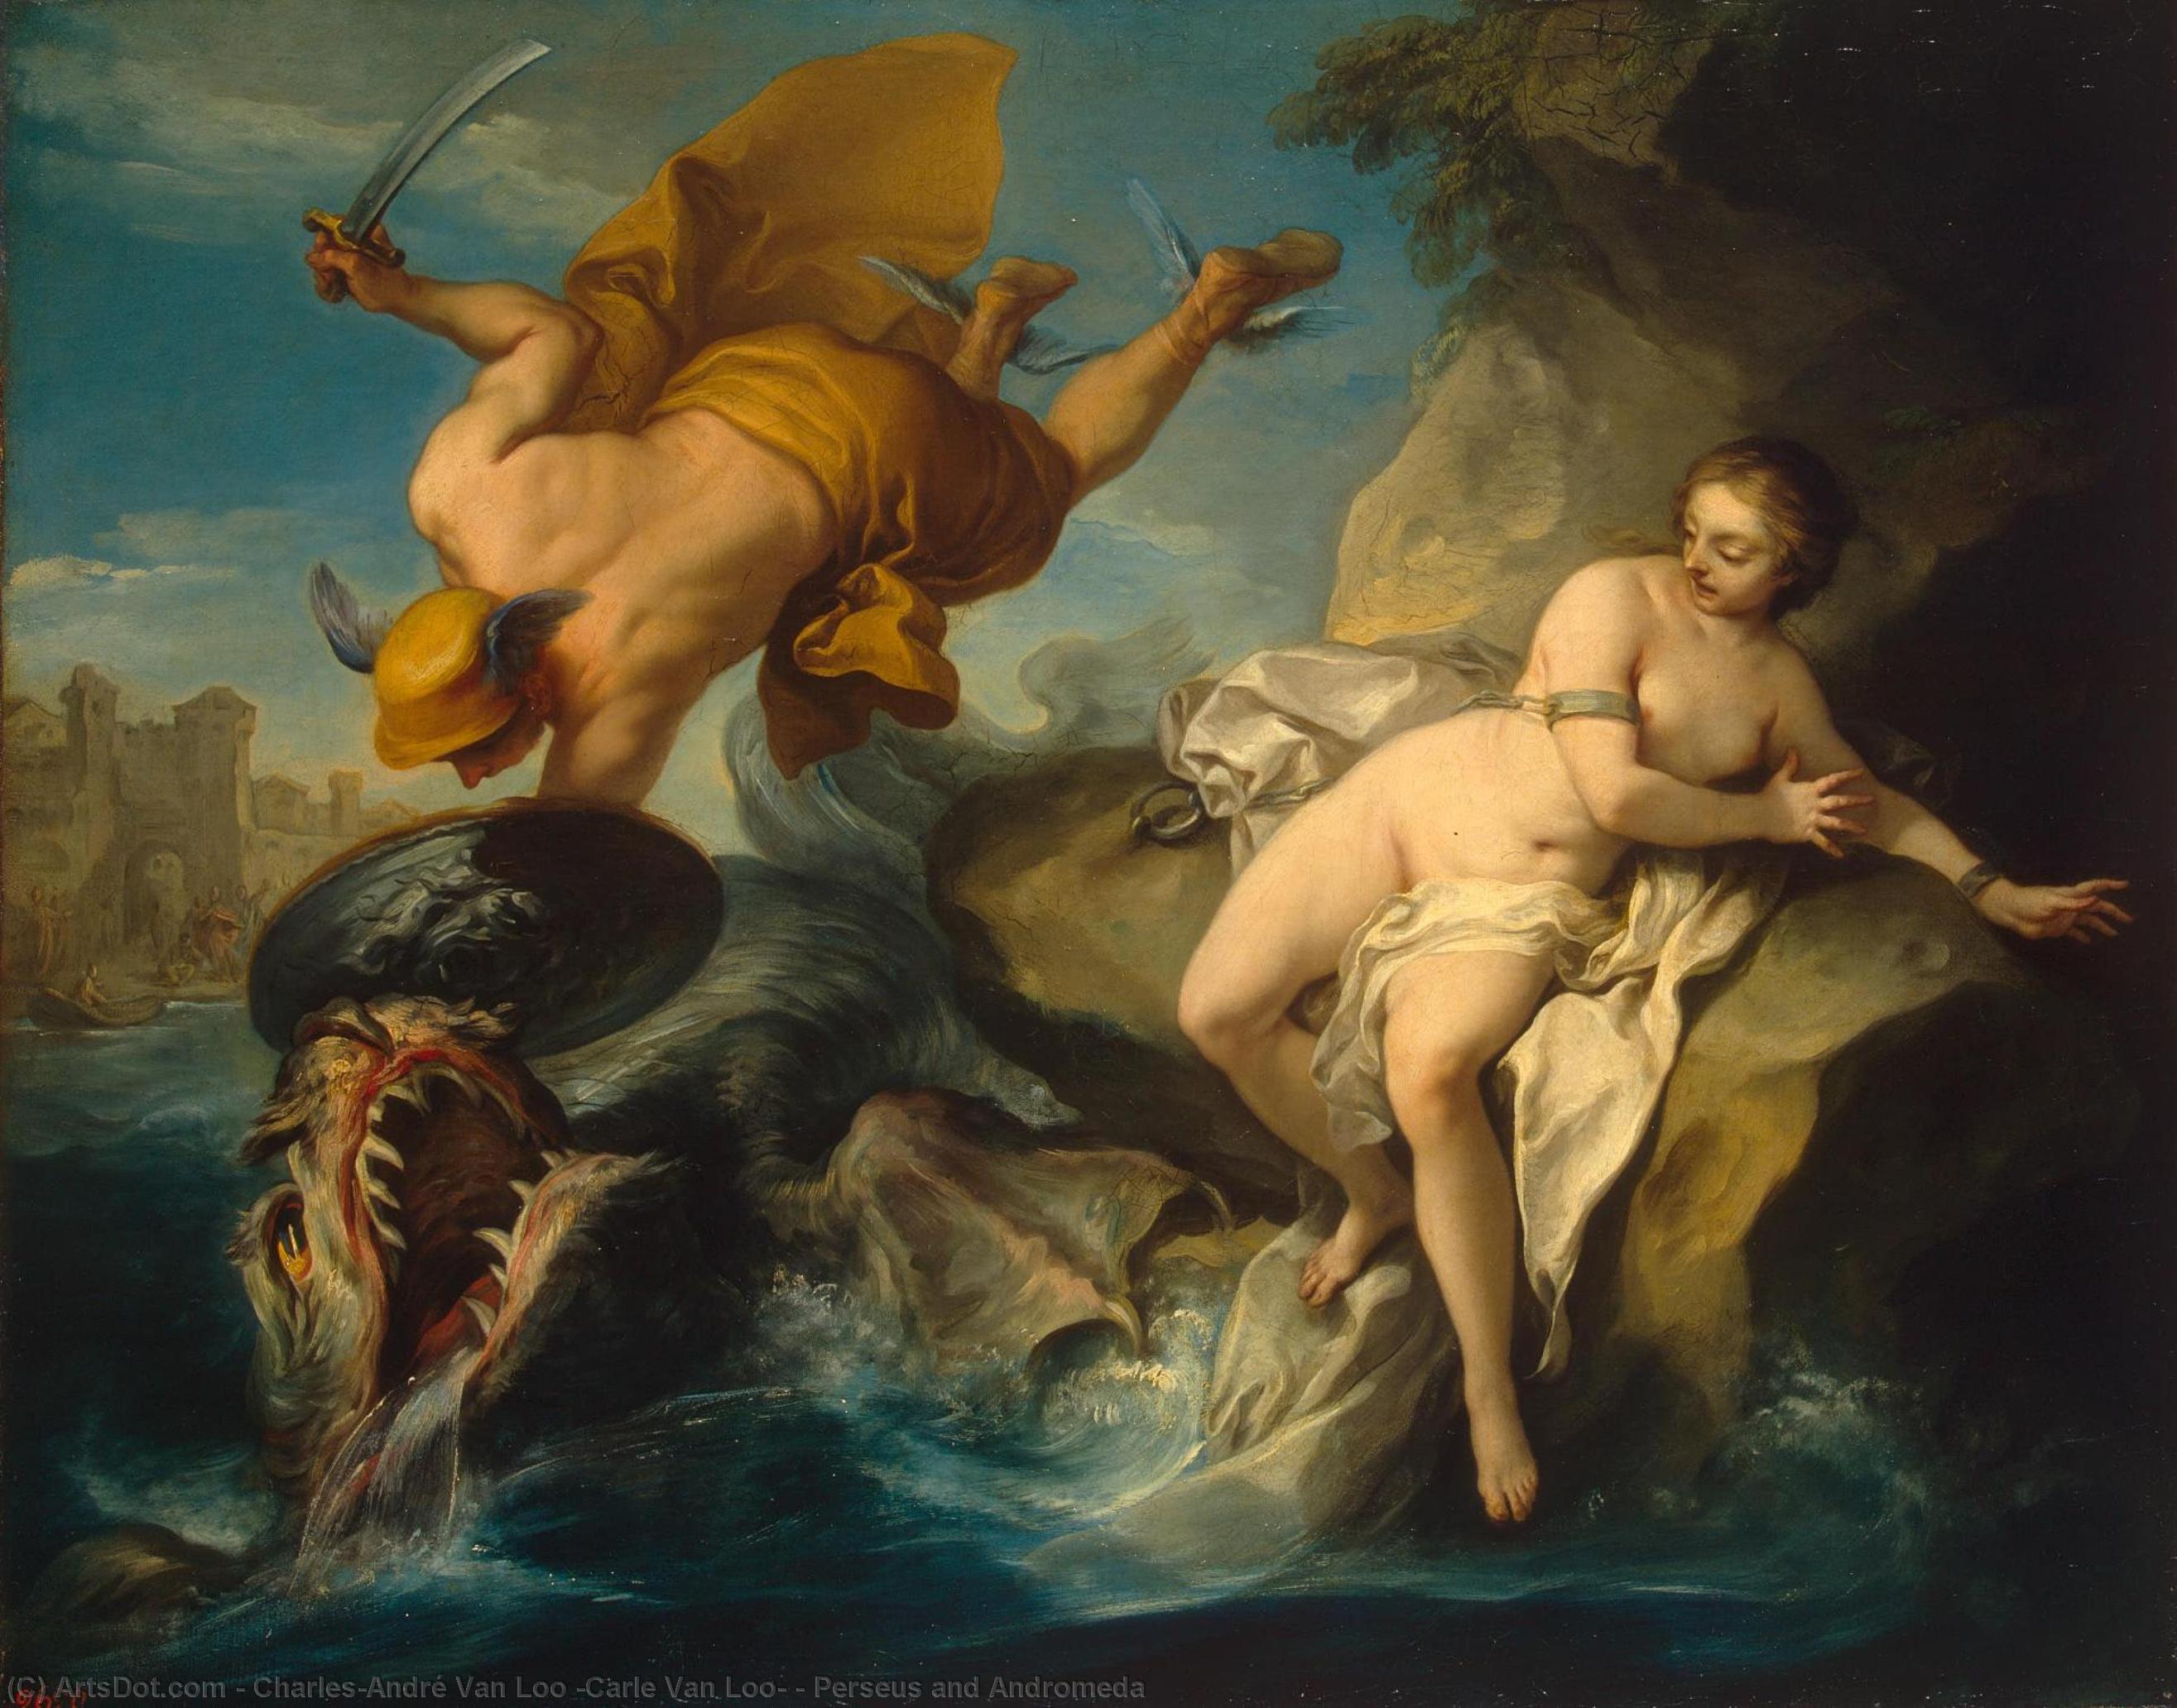 WikiOO.org - Enciclopédia das Belas Artes - Pintura, Arte por Charles-André Van Loo (Carle Van Loo) - Perseus and Andromeda